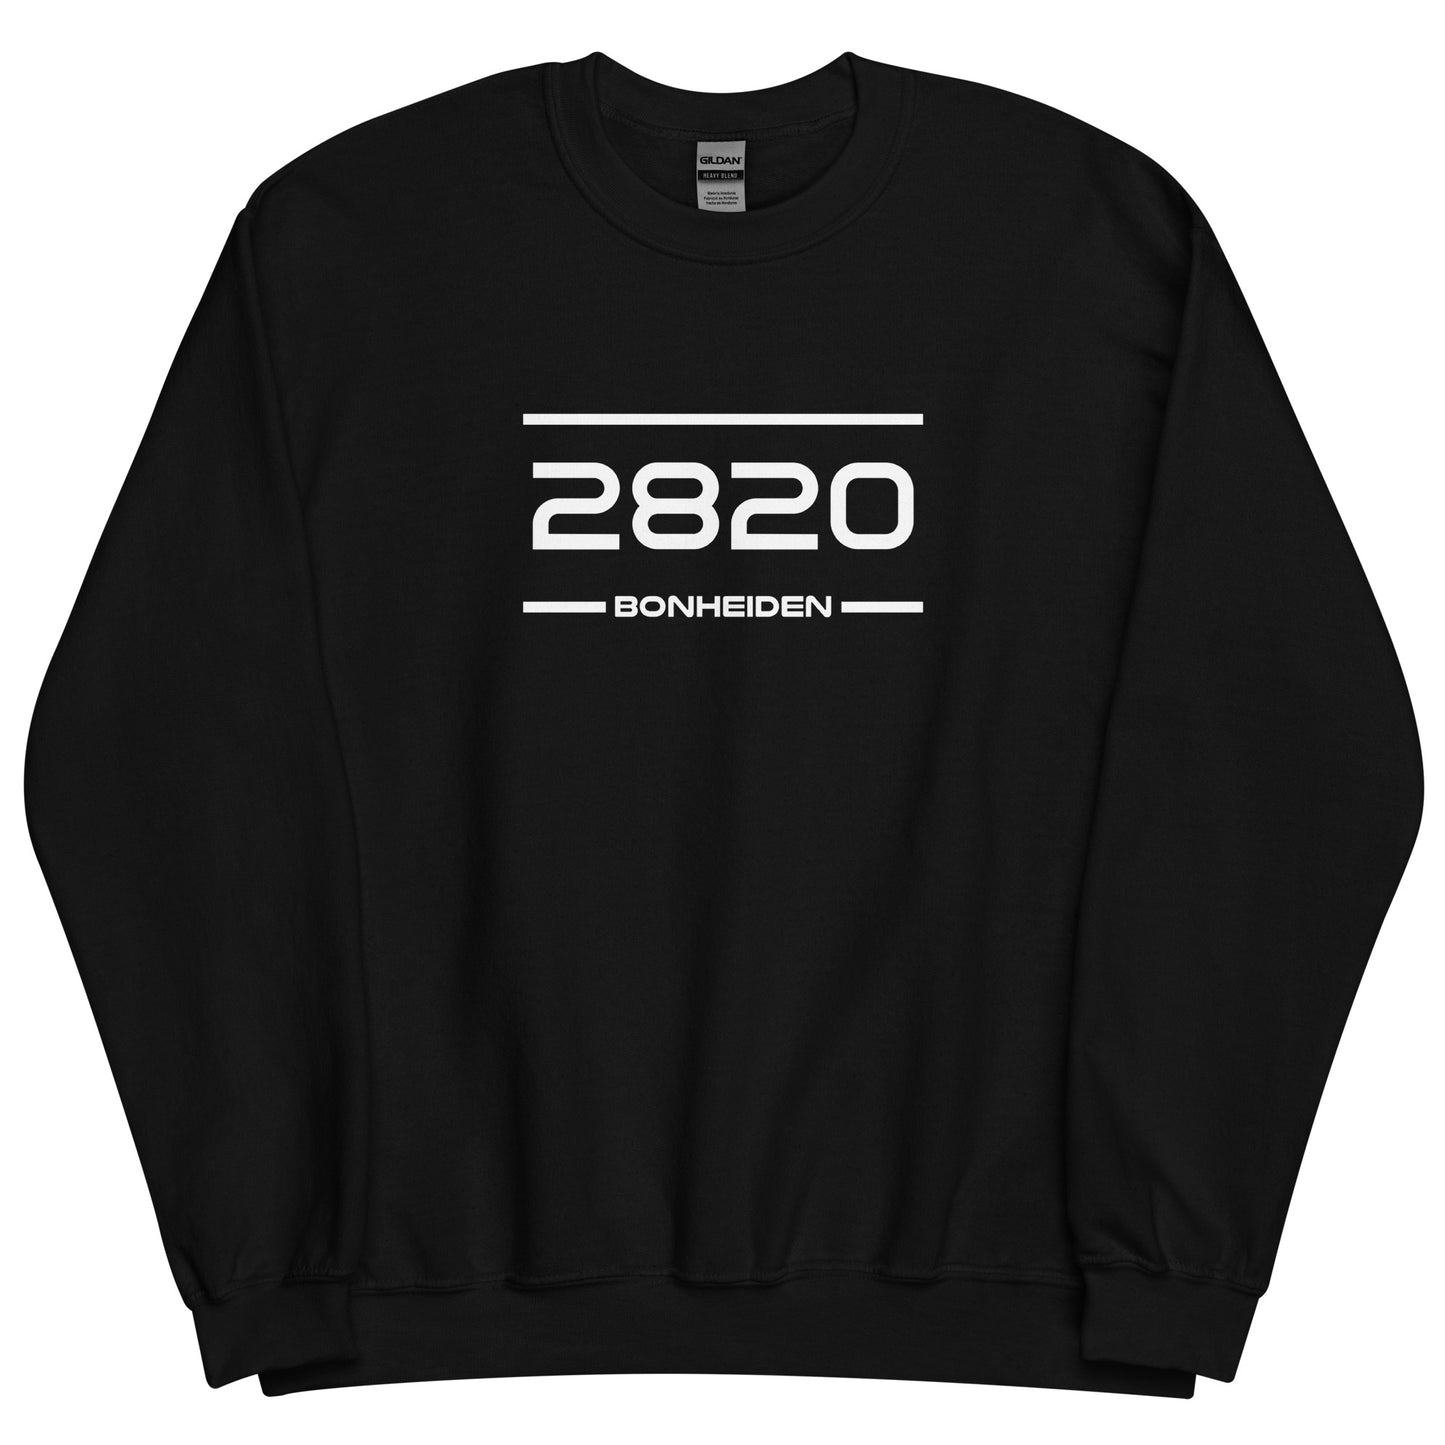 Sweater - 2820 - Bonheiden (M/V)